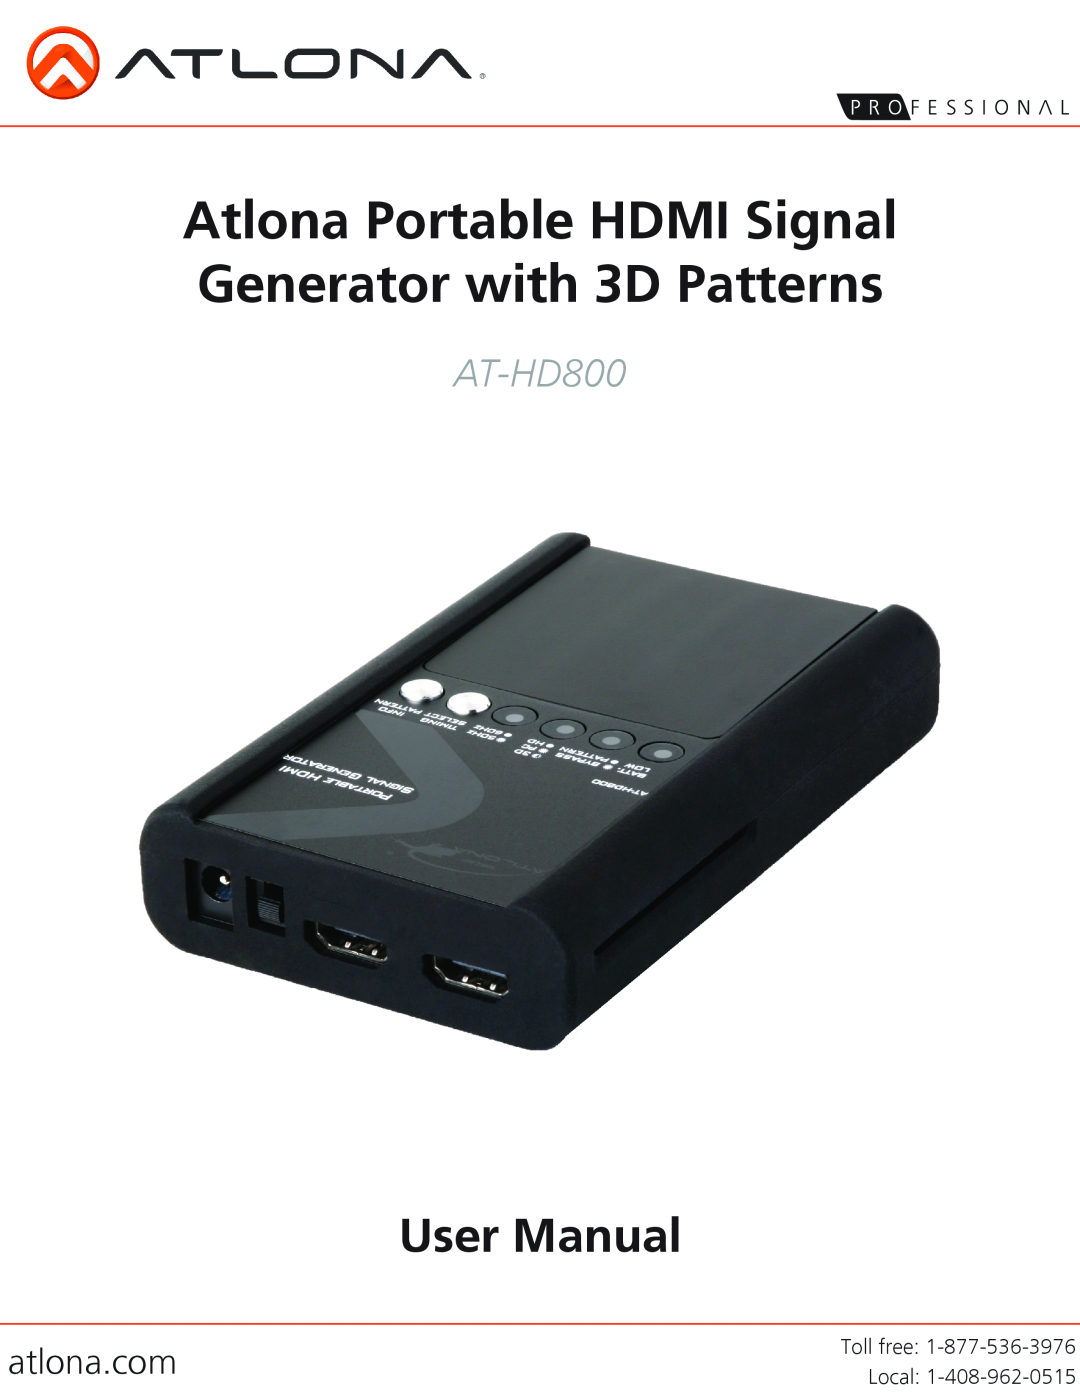 Atlona AT-HD800 user manual atlona.com, Atlona Portable HDMI Signal Generator with 3D Patterns, User Manual, Toll free 